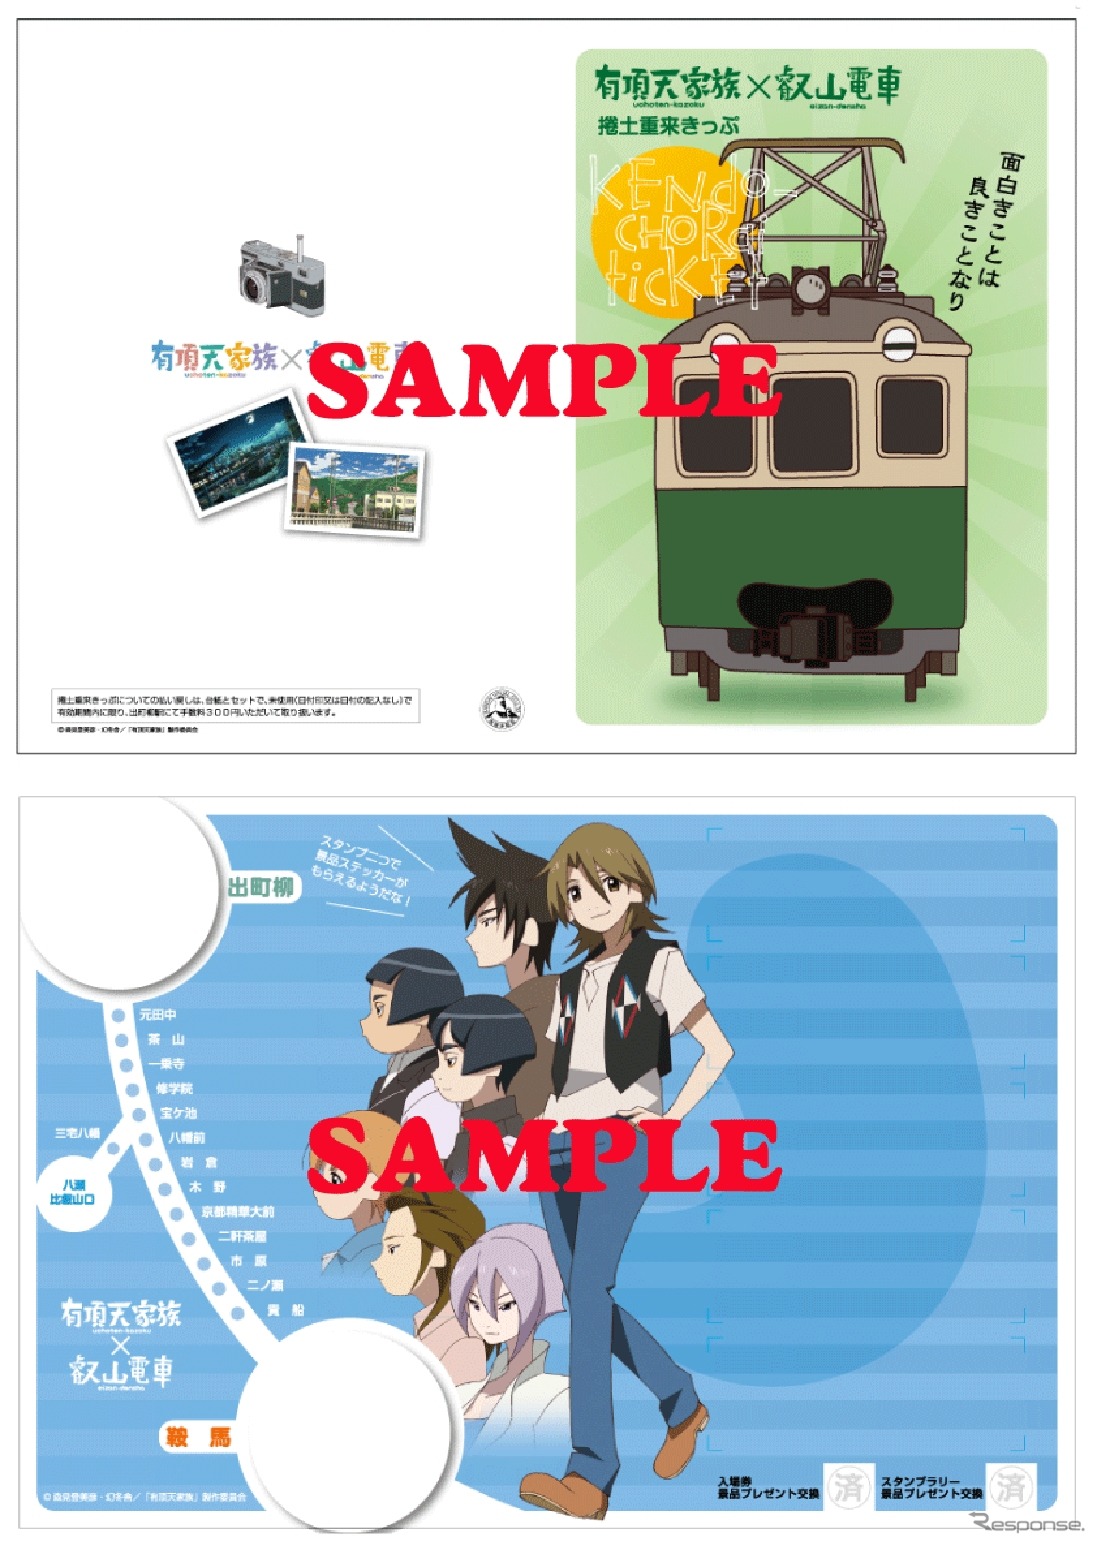 1日乗車券「捲土重来きっぷ」には「偽叡山電車」などがデザインされた台紙も付く。